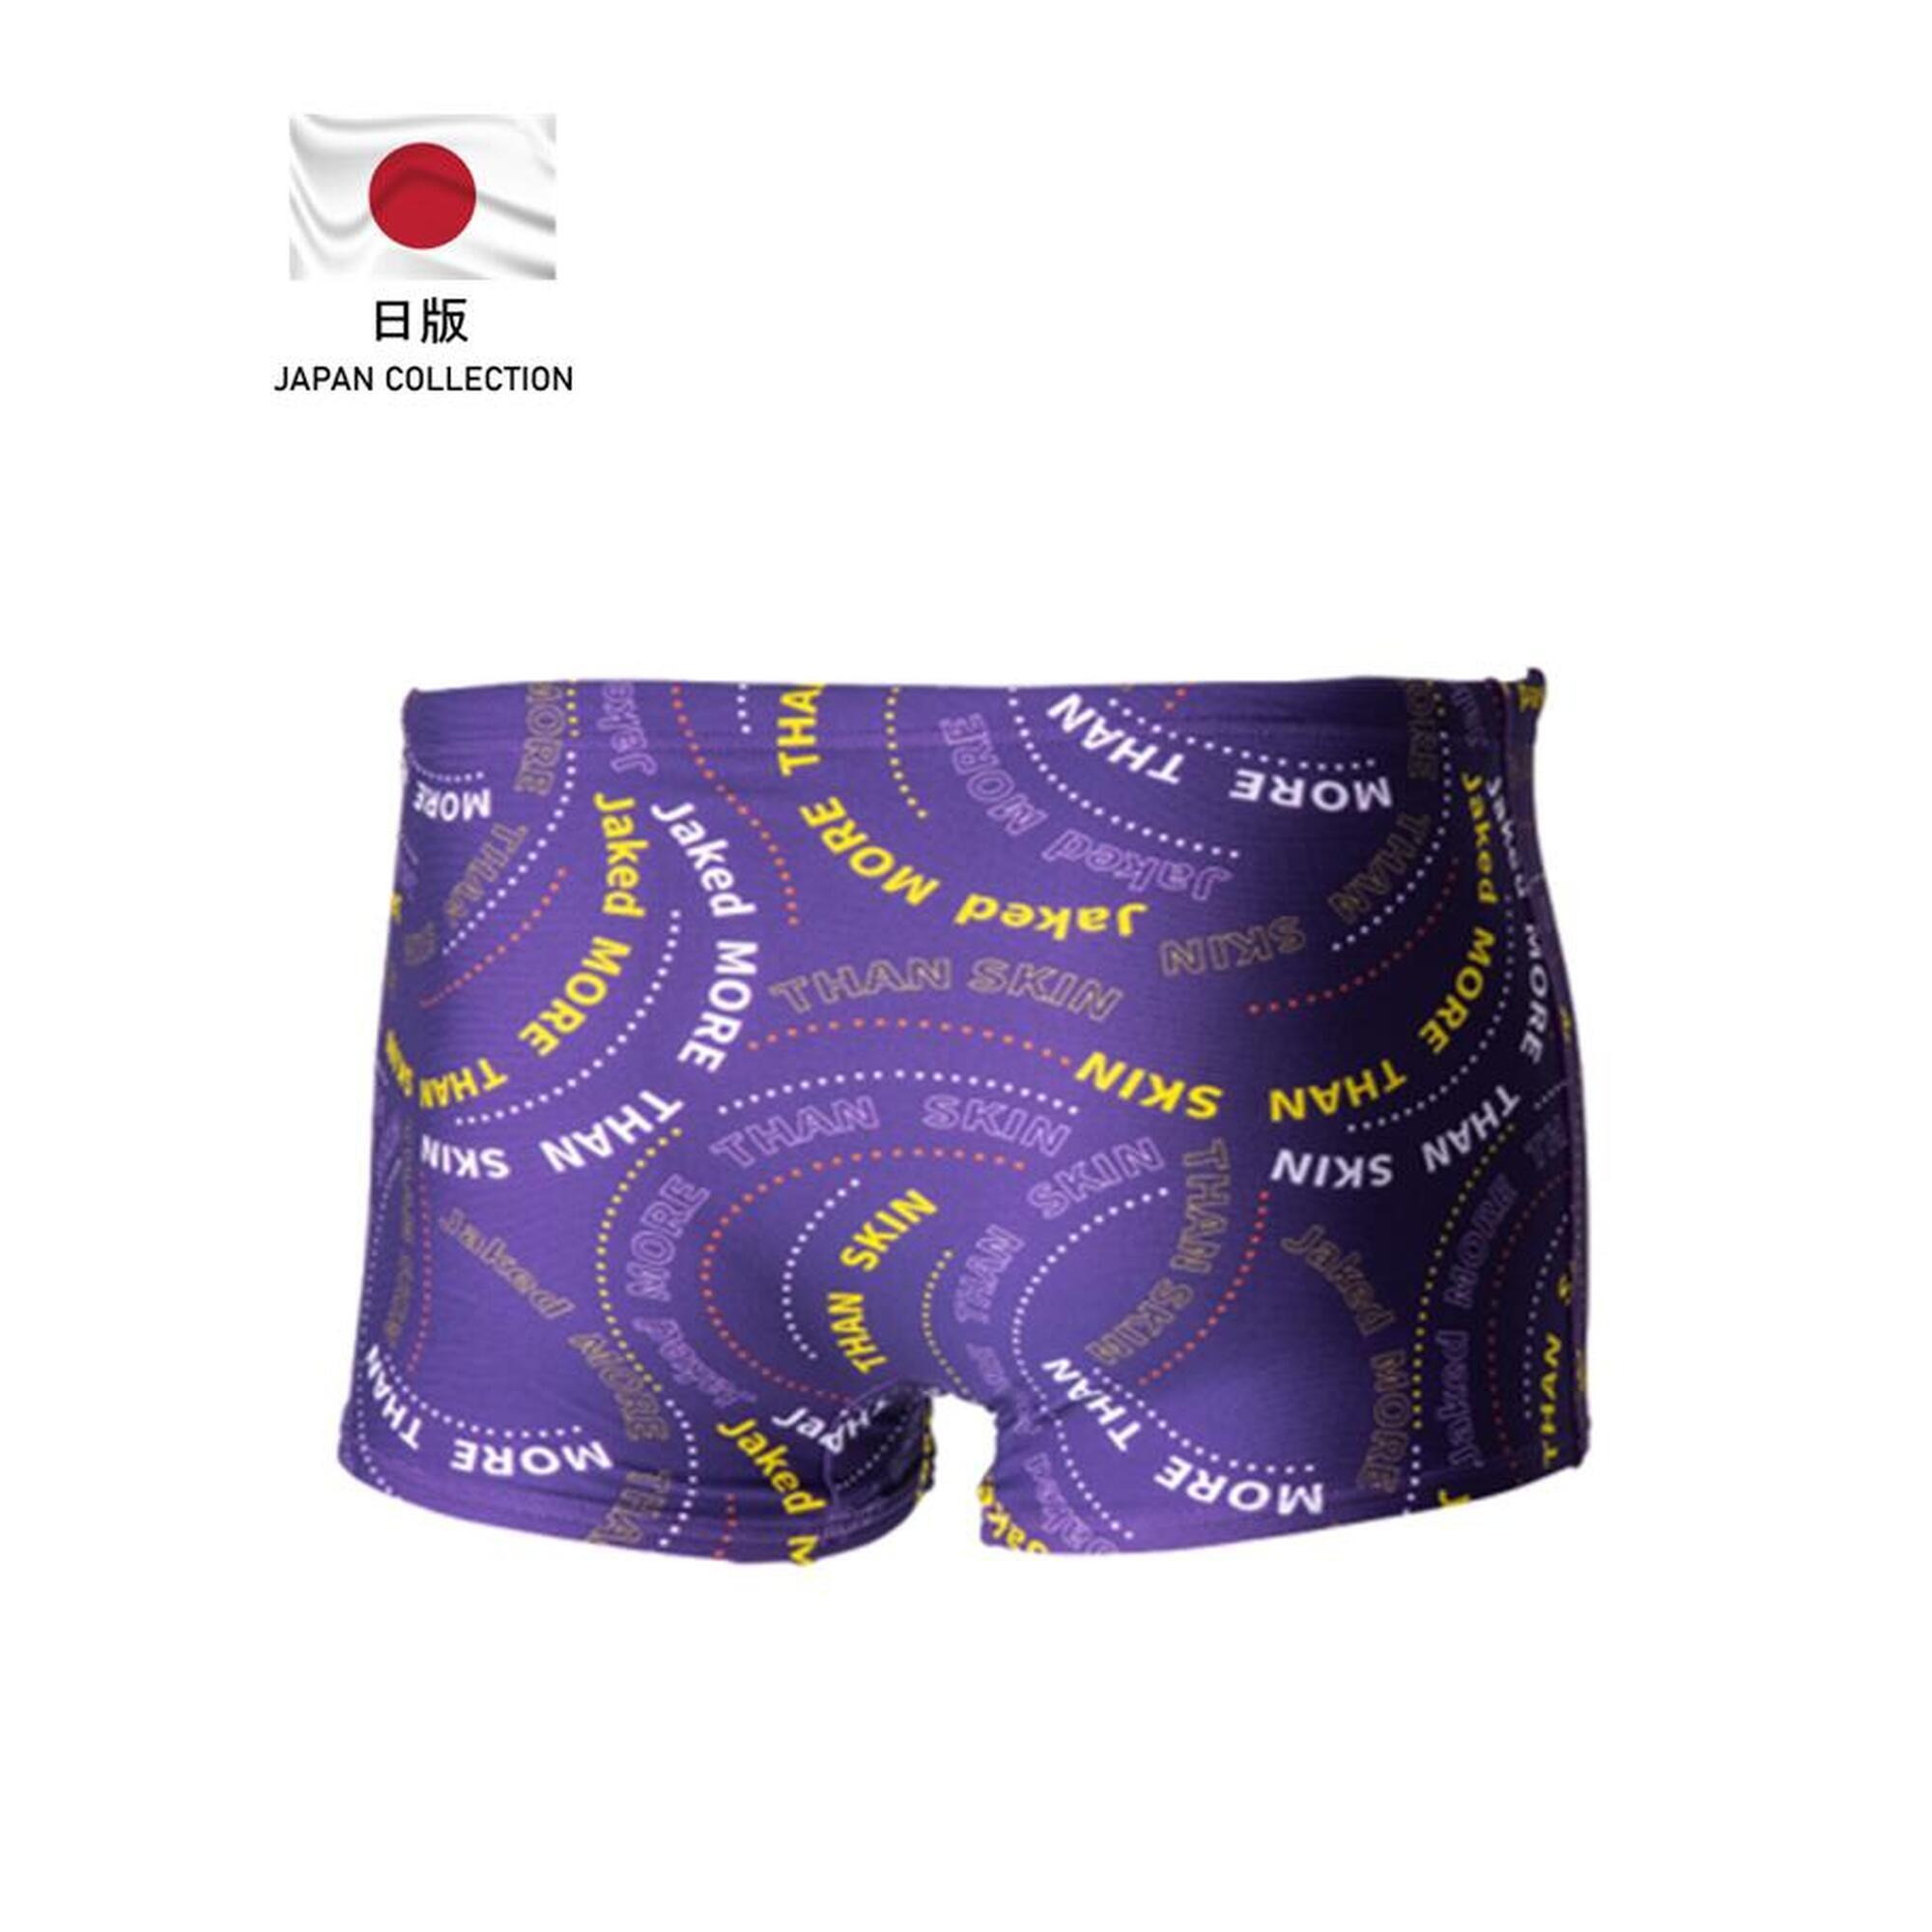 日版 603 男士訓練泳褲 - 紫色